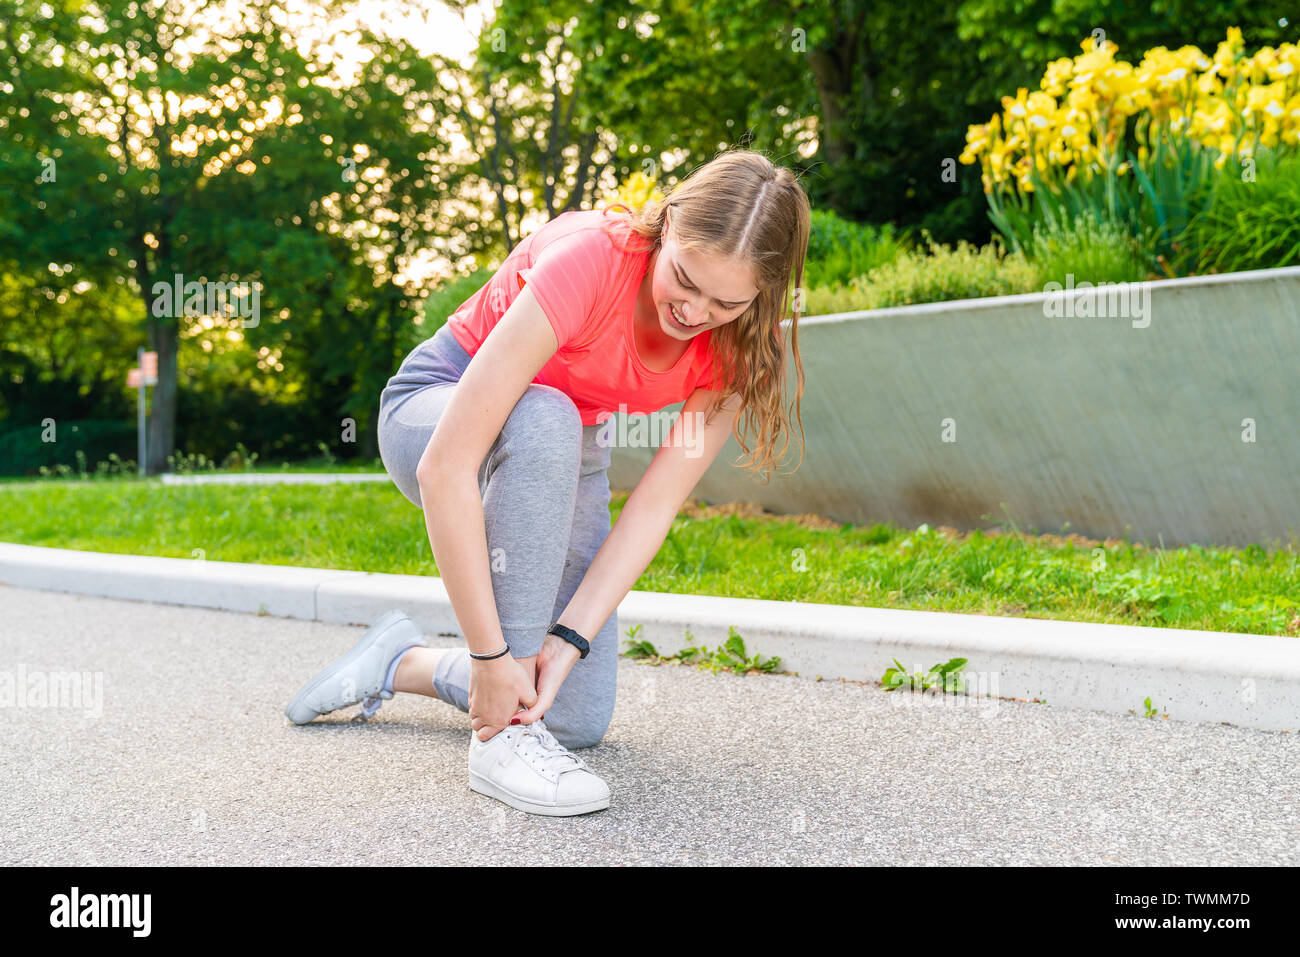 Una mujer tuvo un accidente con su tobillo durante las actividades deportivas y la mantiene apretada Foto de stock